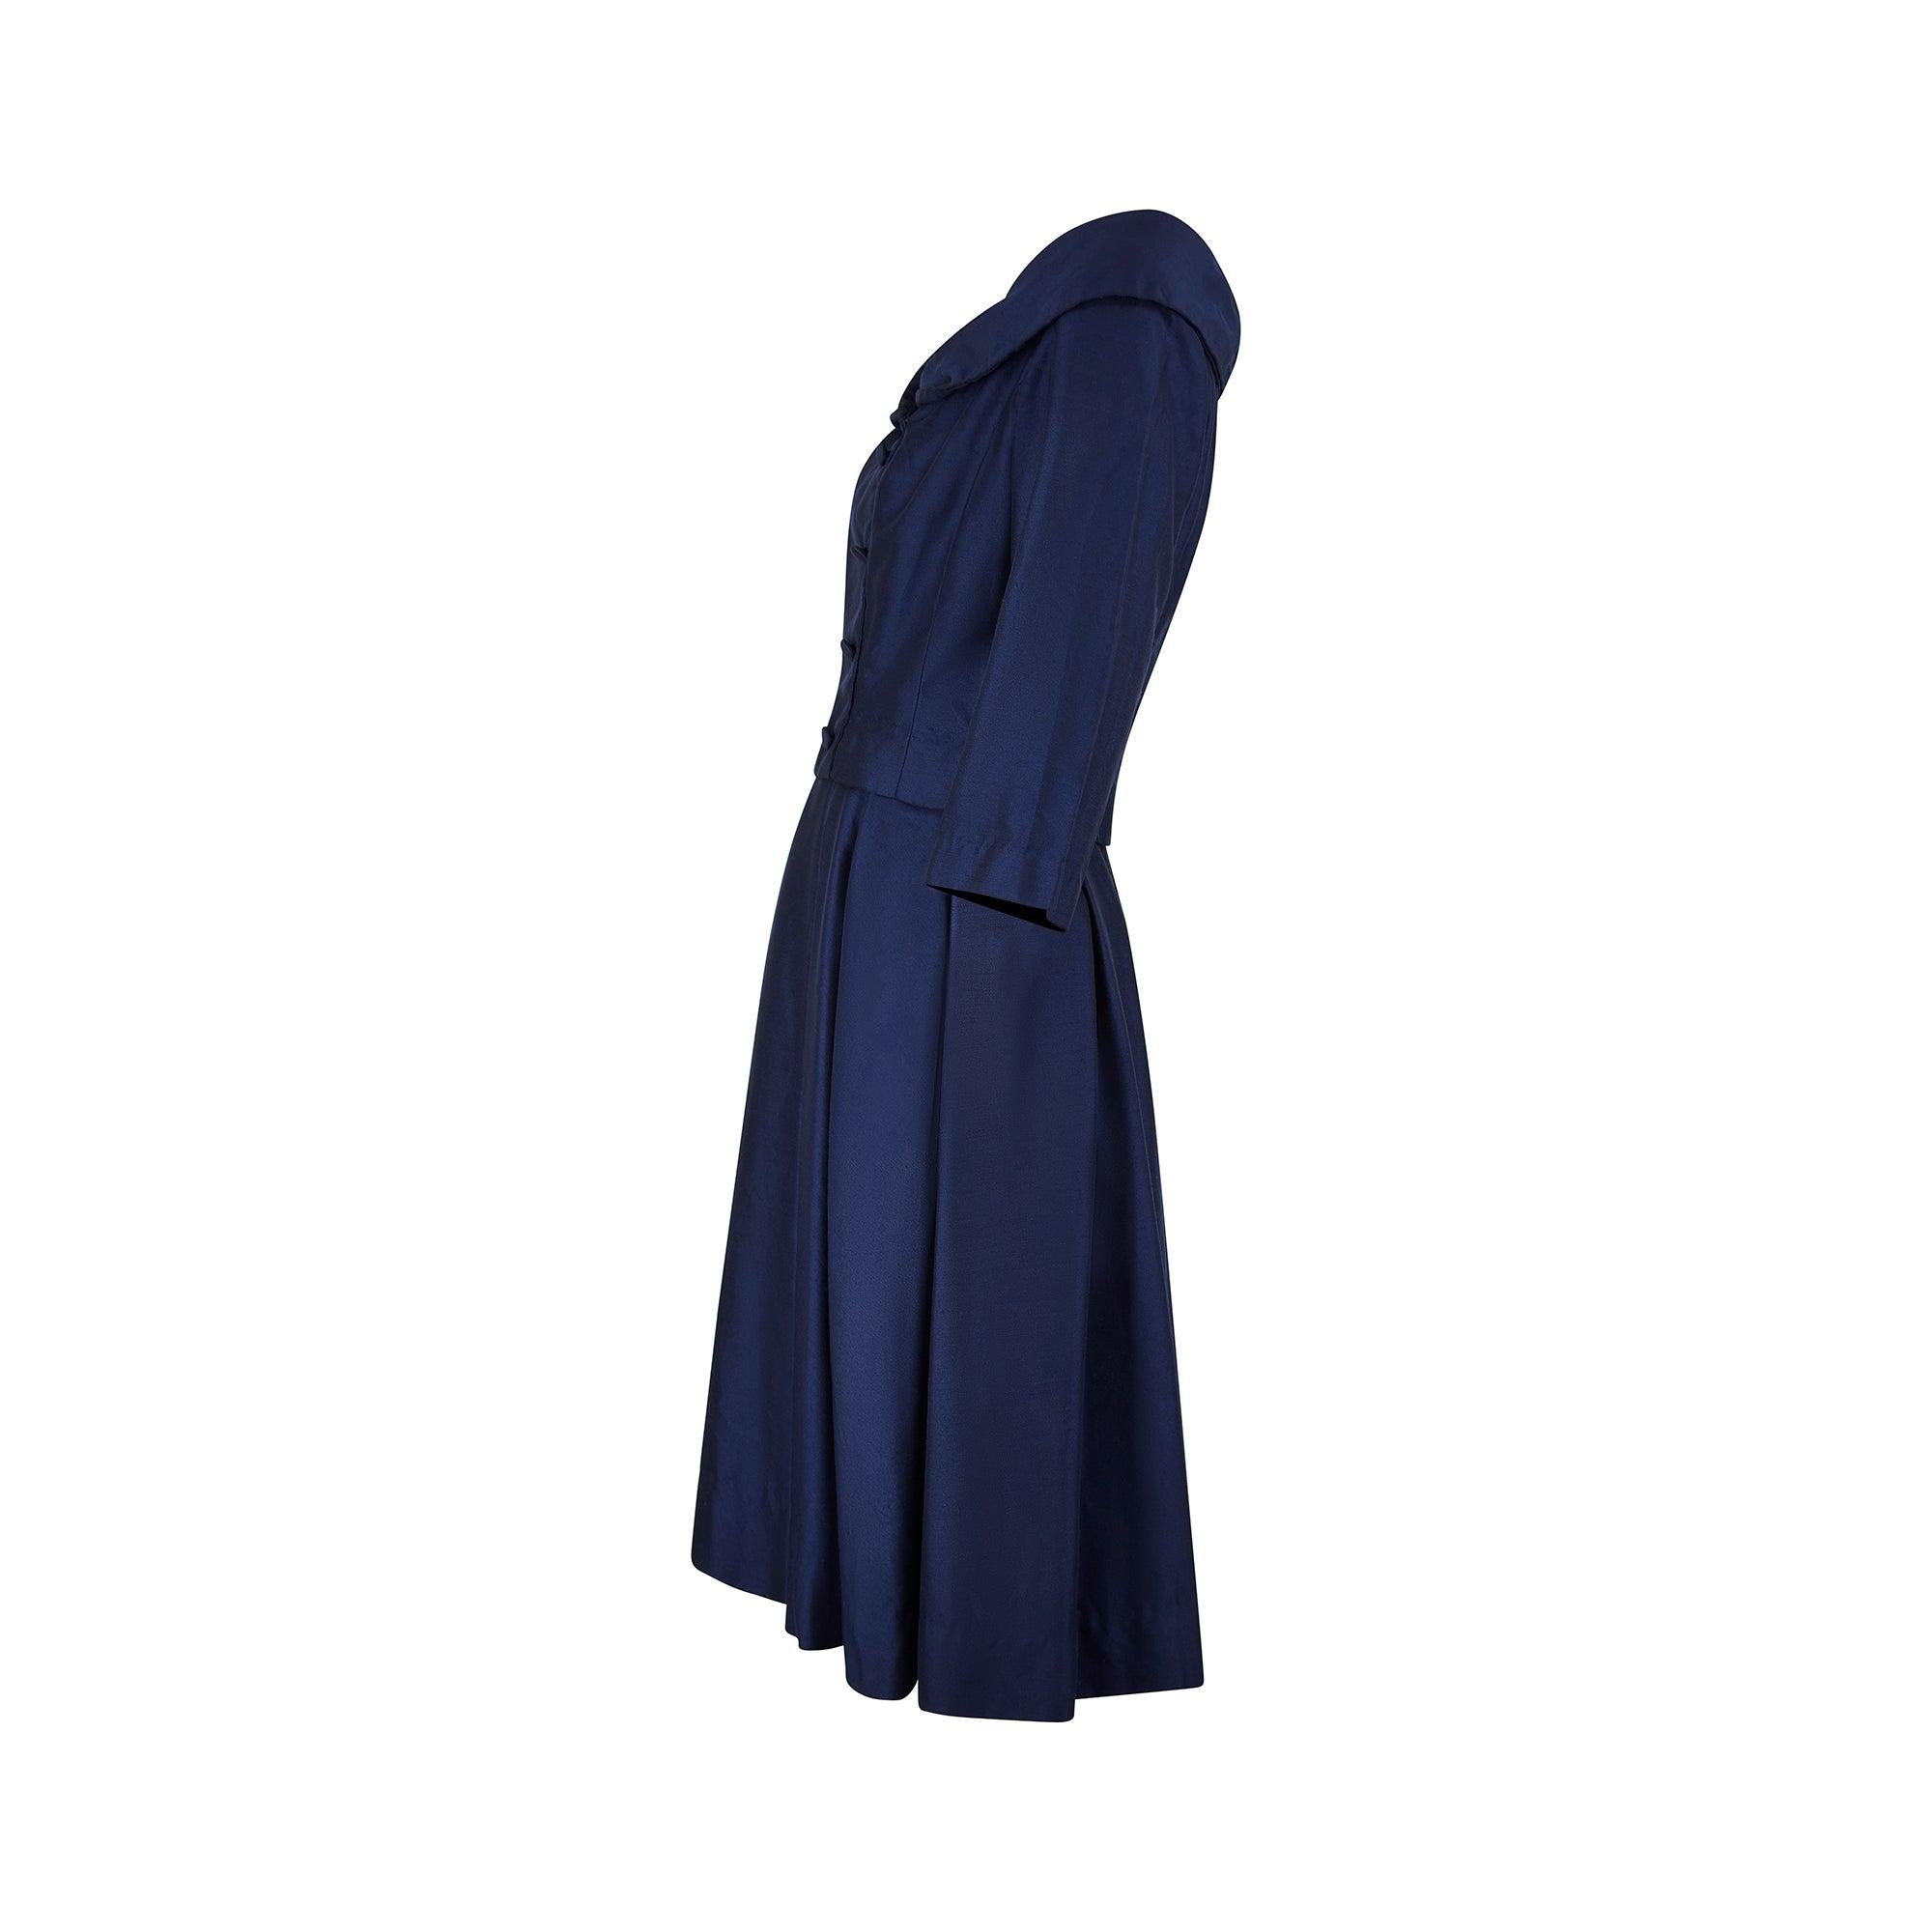 Cette robe est l'incarnation même de l'élégance. Conçue à la fin des années 1950 pour le grand magasin londonien Harrods, elle donne l'illusion d'un tailleur deux pièces composé d'une veste et d'une jupe à double boutonnage, mais il s'agit en fait